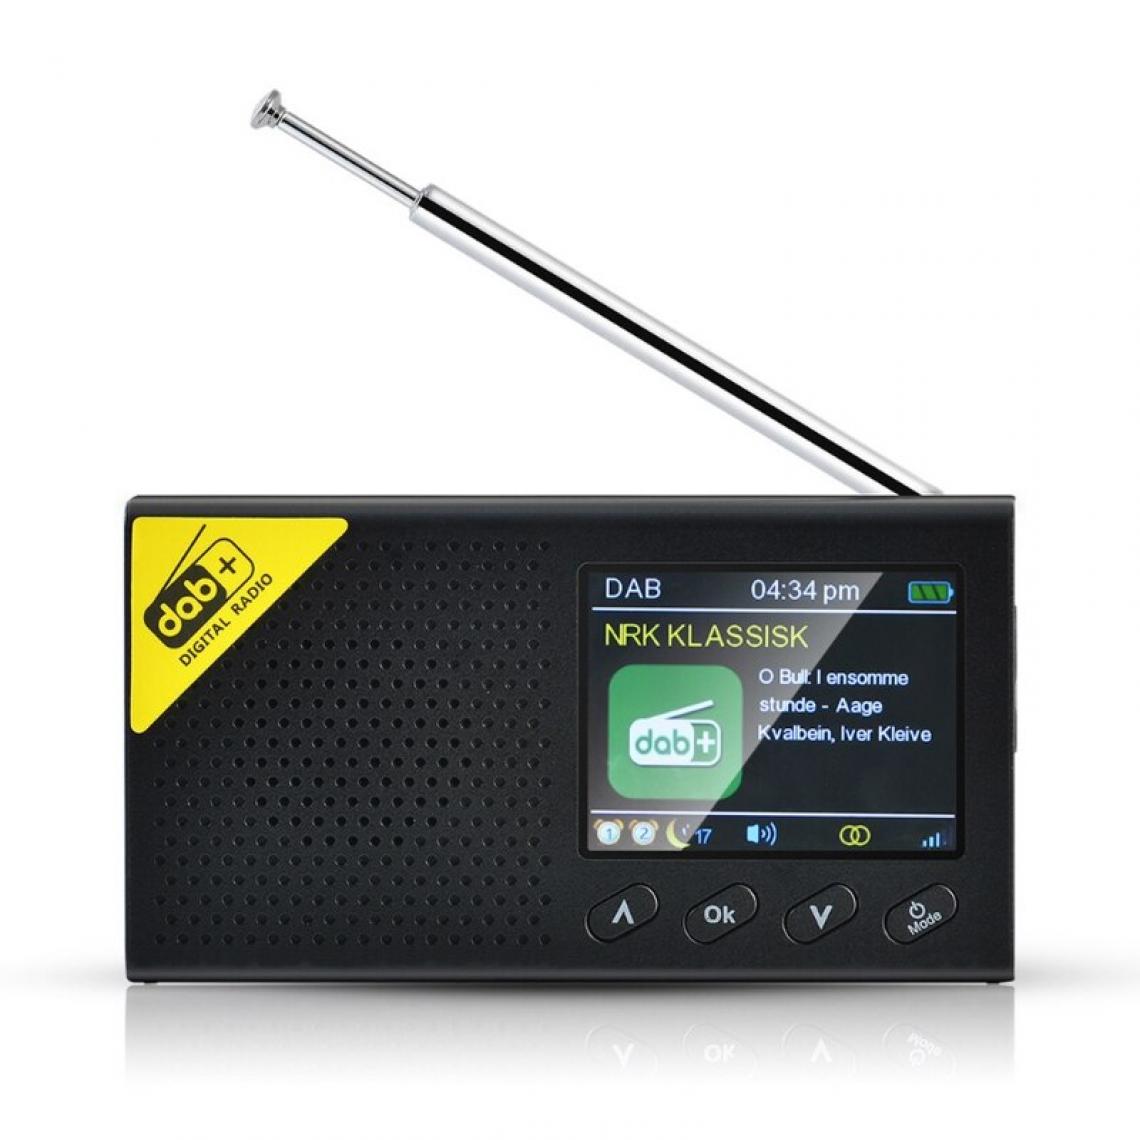 Universal - 1 Configuration radio numérique Bluetooth portable DAB/DAB + et récepteur FM Radio domestique légère rechargeable | Radio(Le noir) - Radio